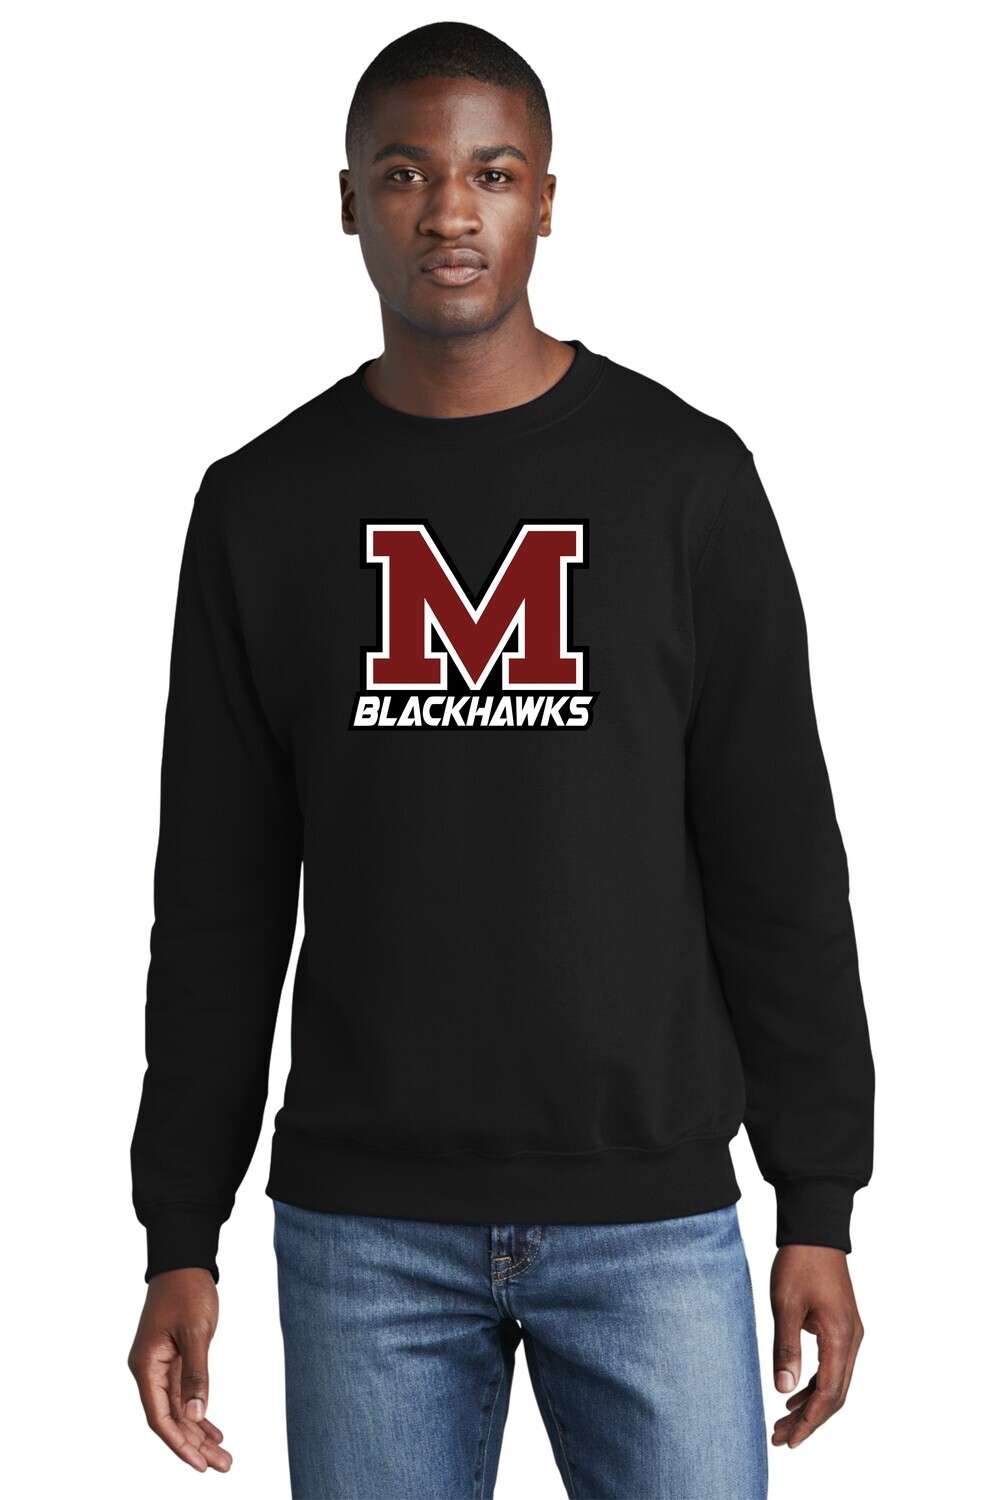 Moline Blackhawks "M" Logo Fleece Crewneck Sweatshirt